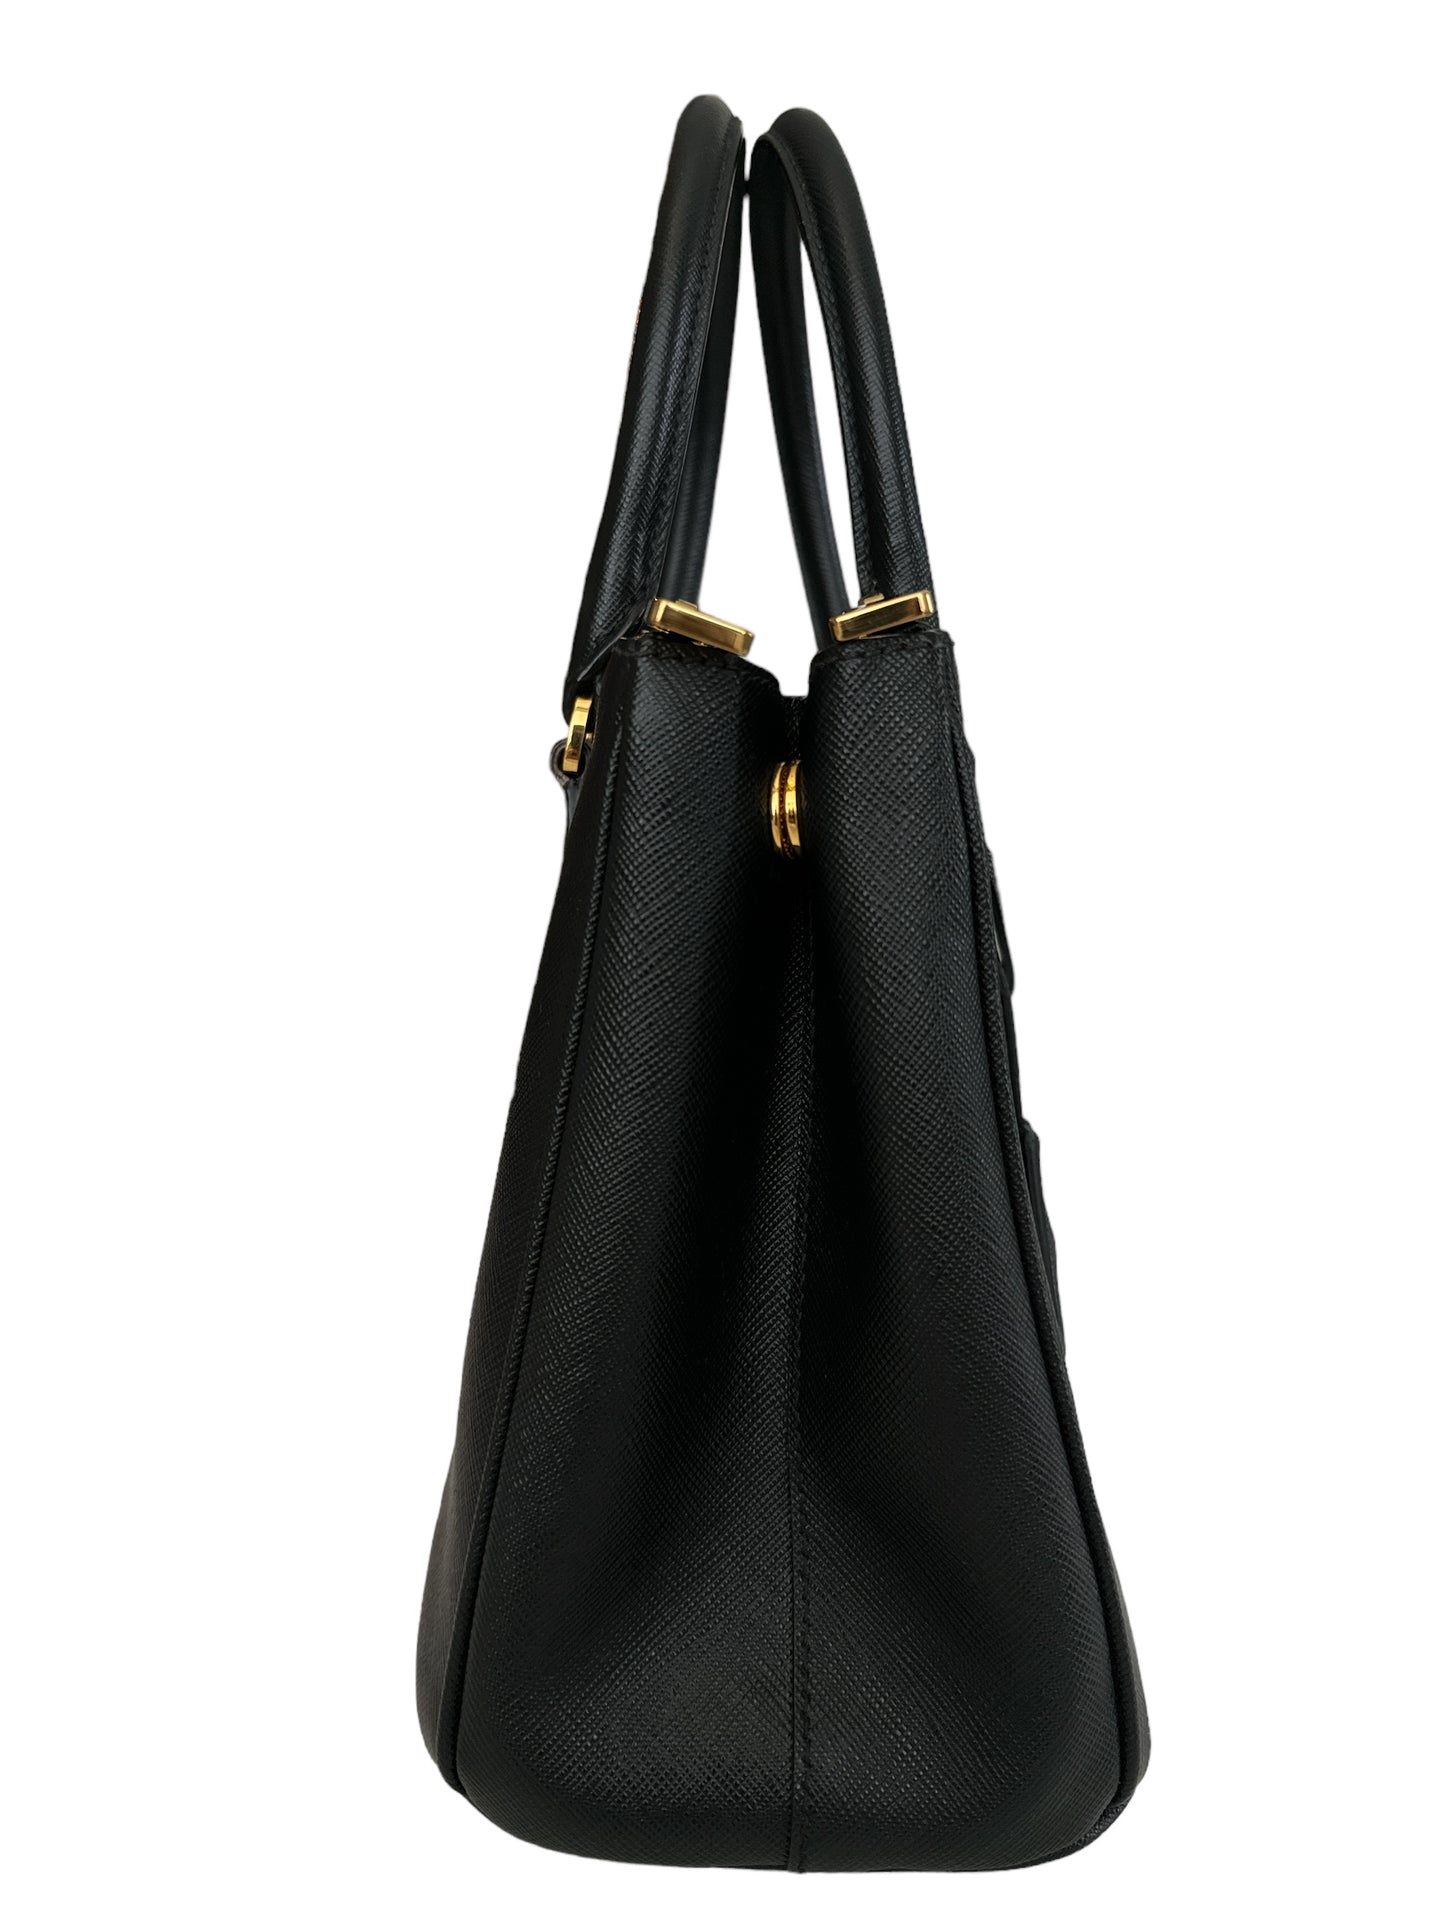 Prada Medium Galleria Black Saffiano leather bag